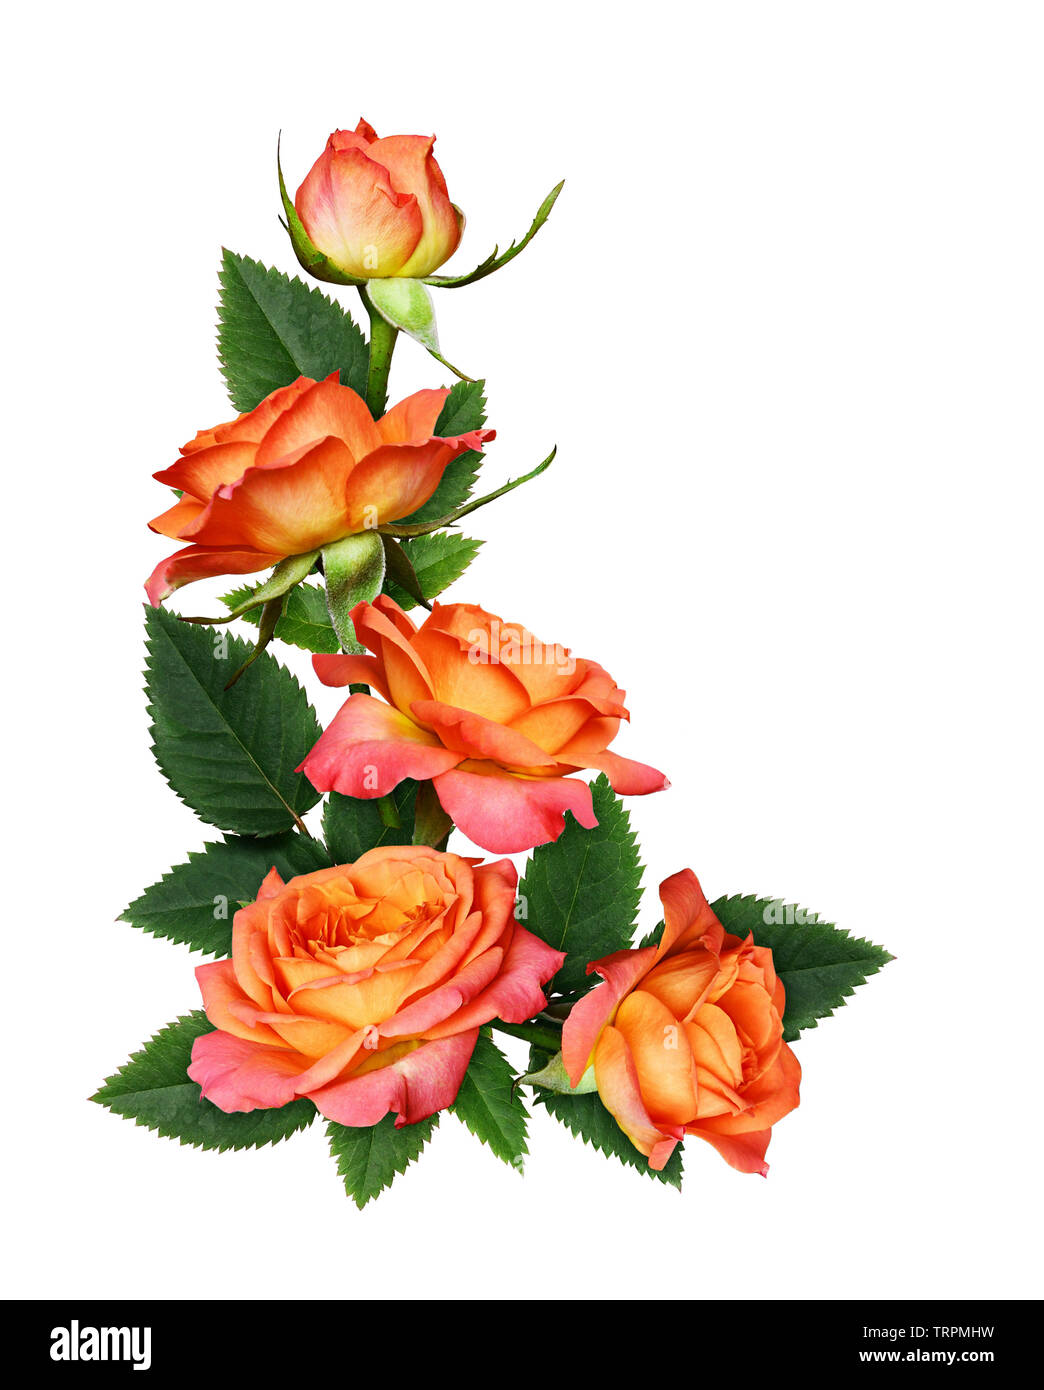 Những bông hoa hồng cam nổi bật và tươi tắn sẽ khiến bạn bị thu hút ngay lập tức. Với màu sắc tươi tắn và nét đẹp hoàn hảo, chúng sẽ mang lại niềm vui và sự may mắn cho người nhìn. Hãy chiêm ngưỡng hình ảnh của những bông hoa hồng cam tuyệt đẹp này để cảm nhận sự tuyệt vời của chúng.